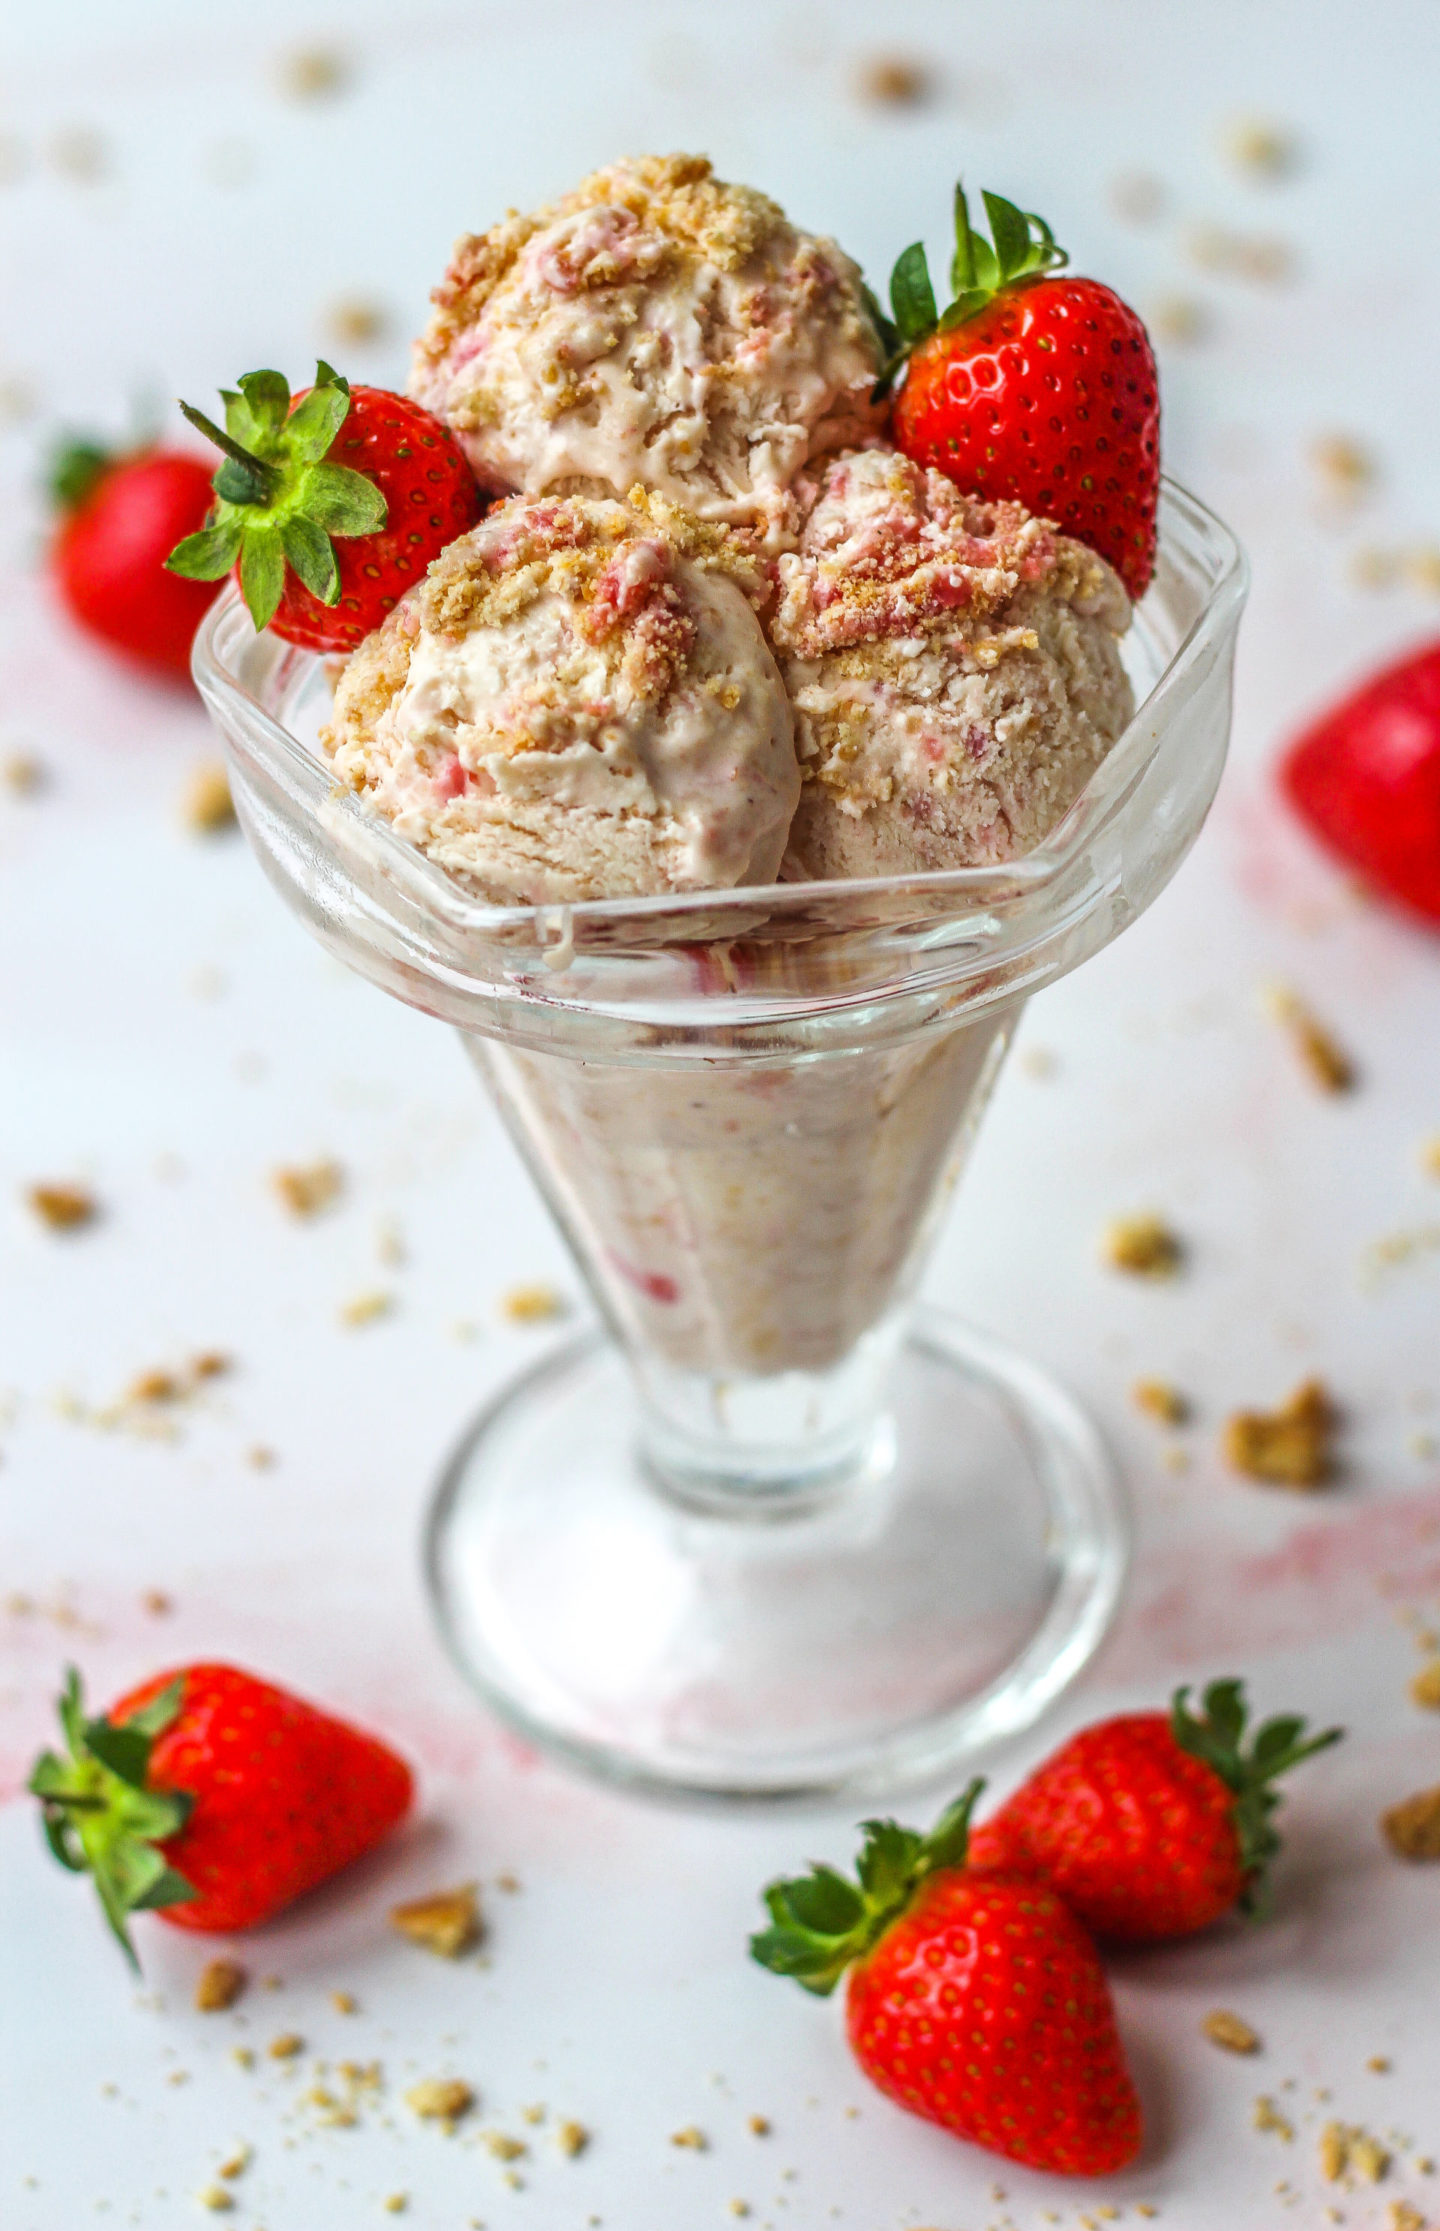 sundae dish with strawberry cheesecake ice cream